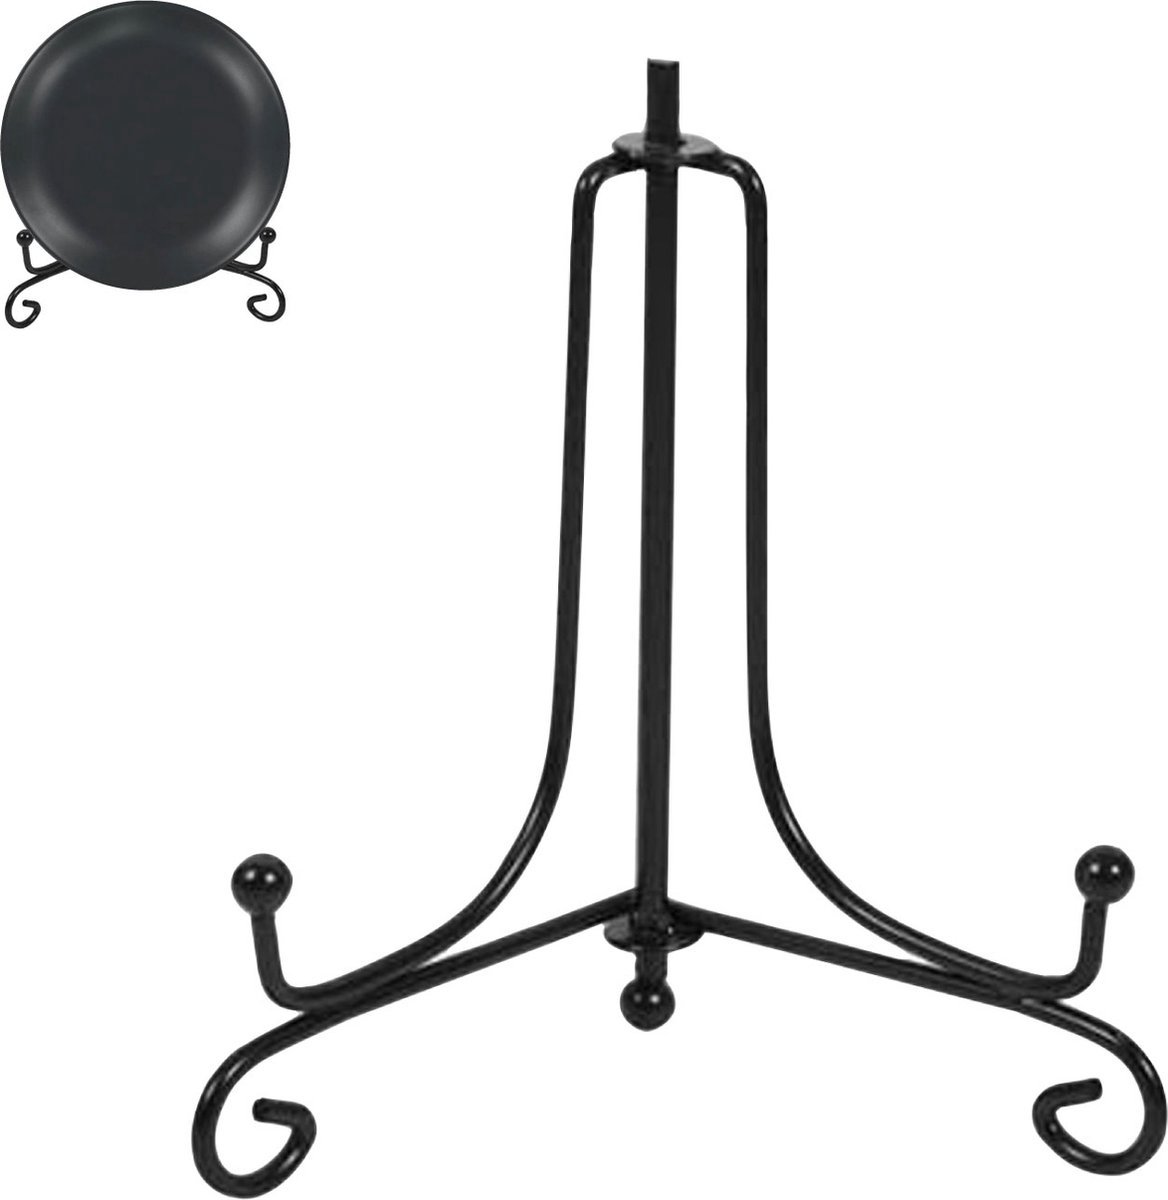 Bordenstandaard - Zwart - Borden tot 27cm hoog - Elegant design - Bordenrek - Borden display standaard - Bordenhouder - Voor sierborden - Bordenhanger